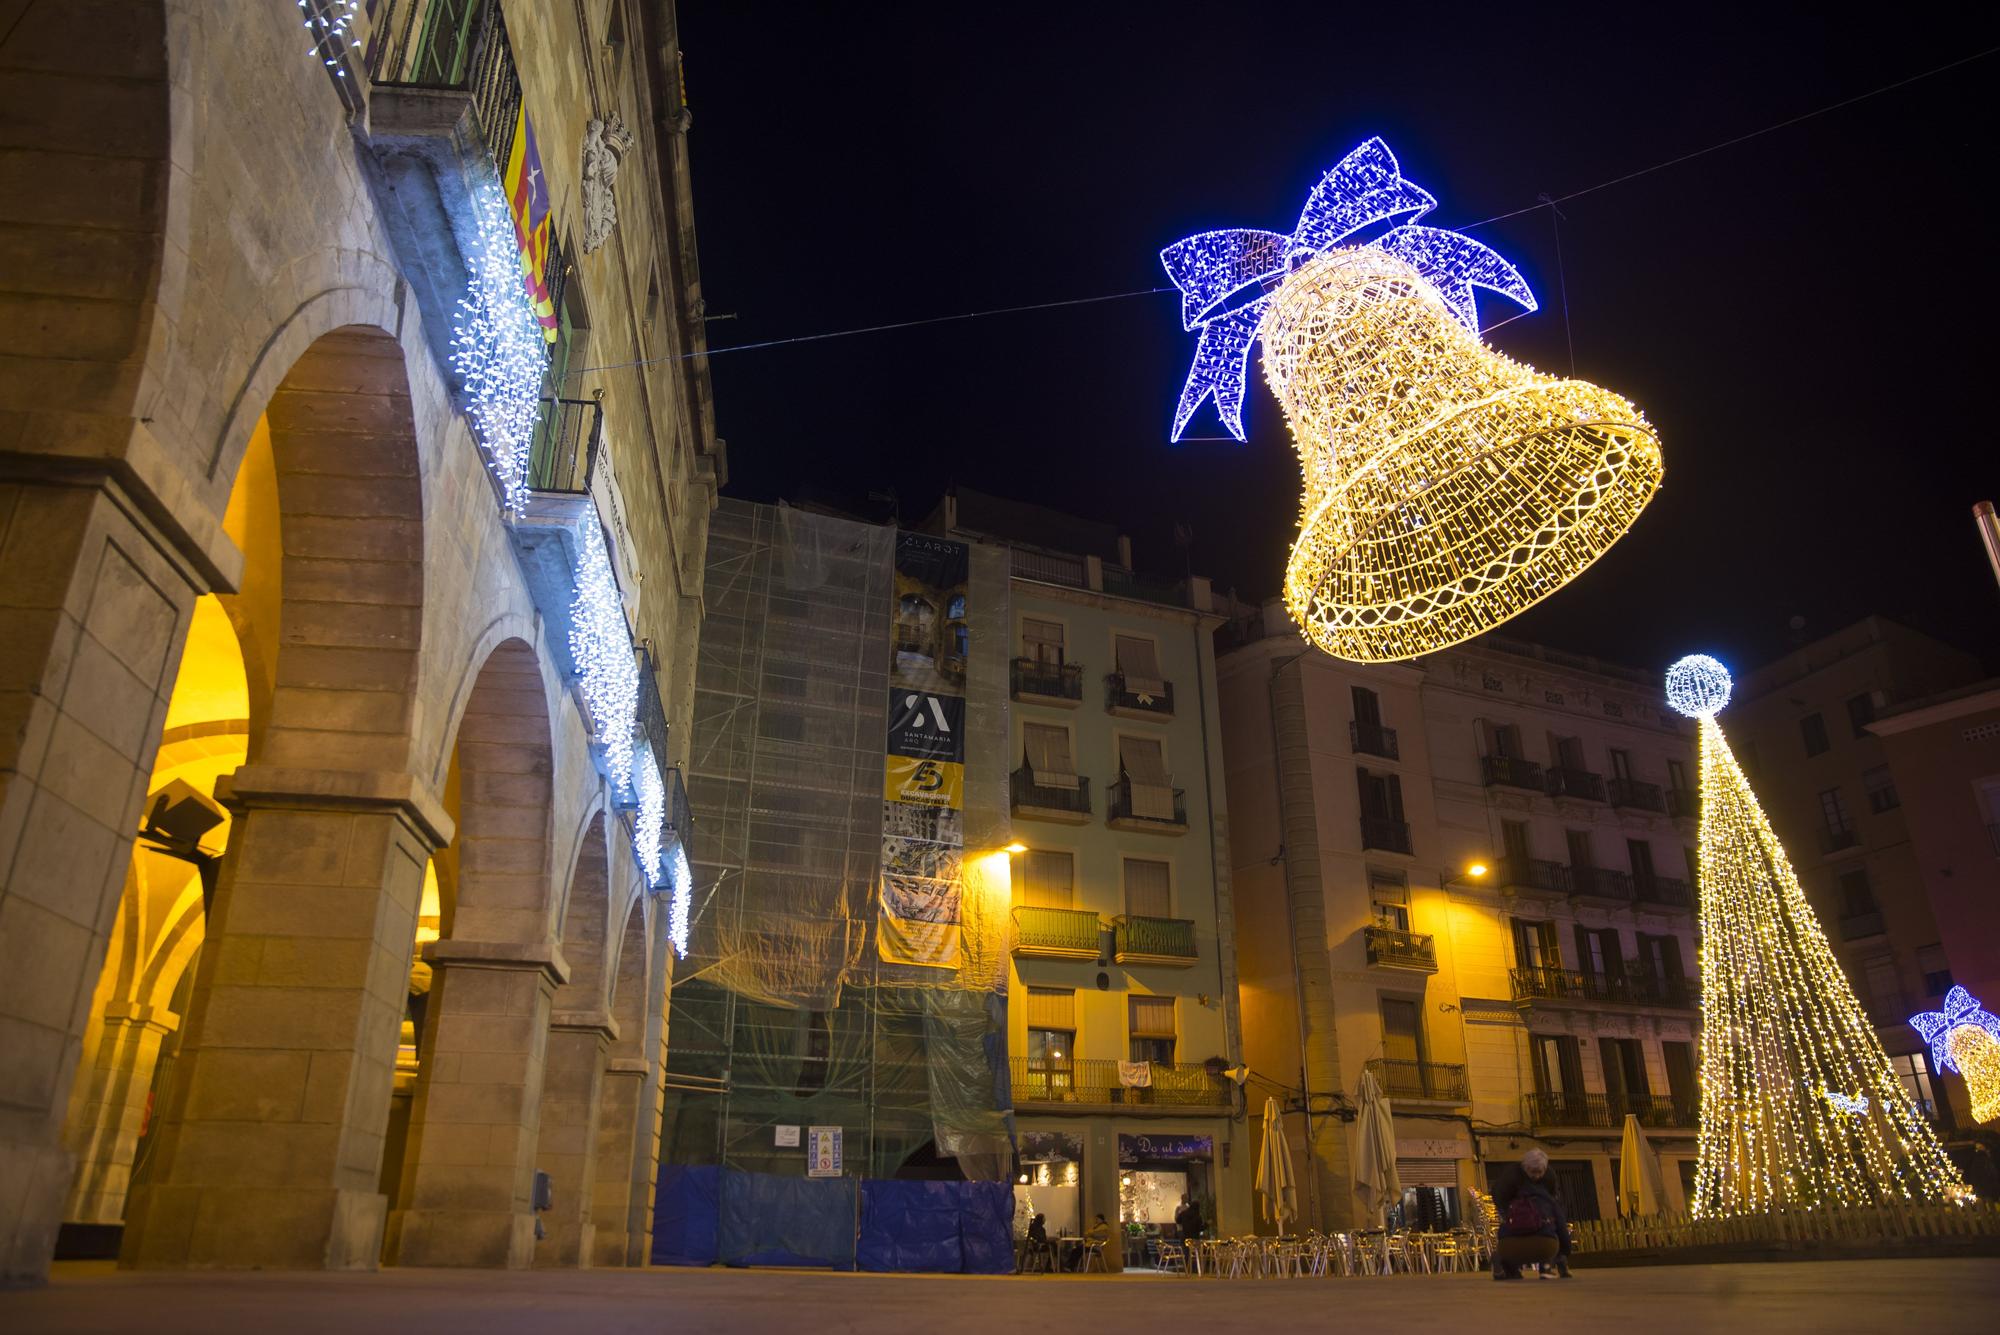 Manresa s'il·lumina: S'engega la il·luminació nadalenca a la ciutat